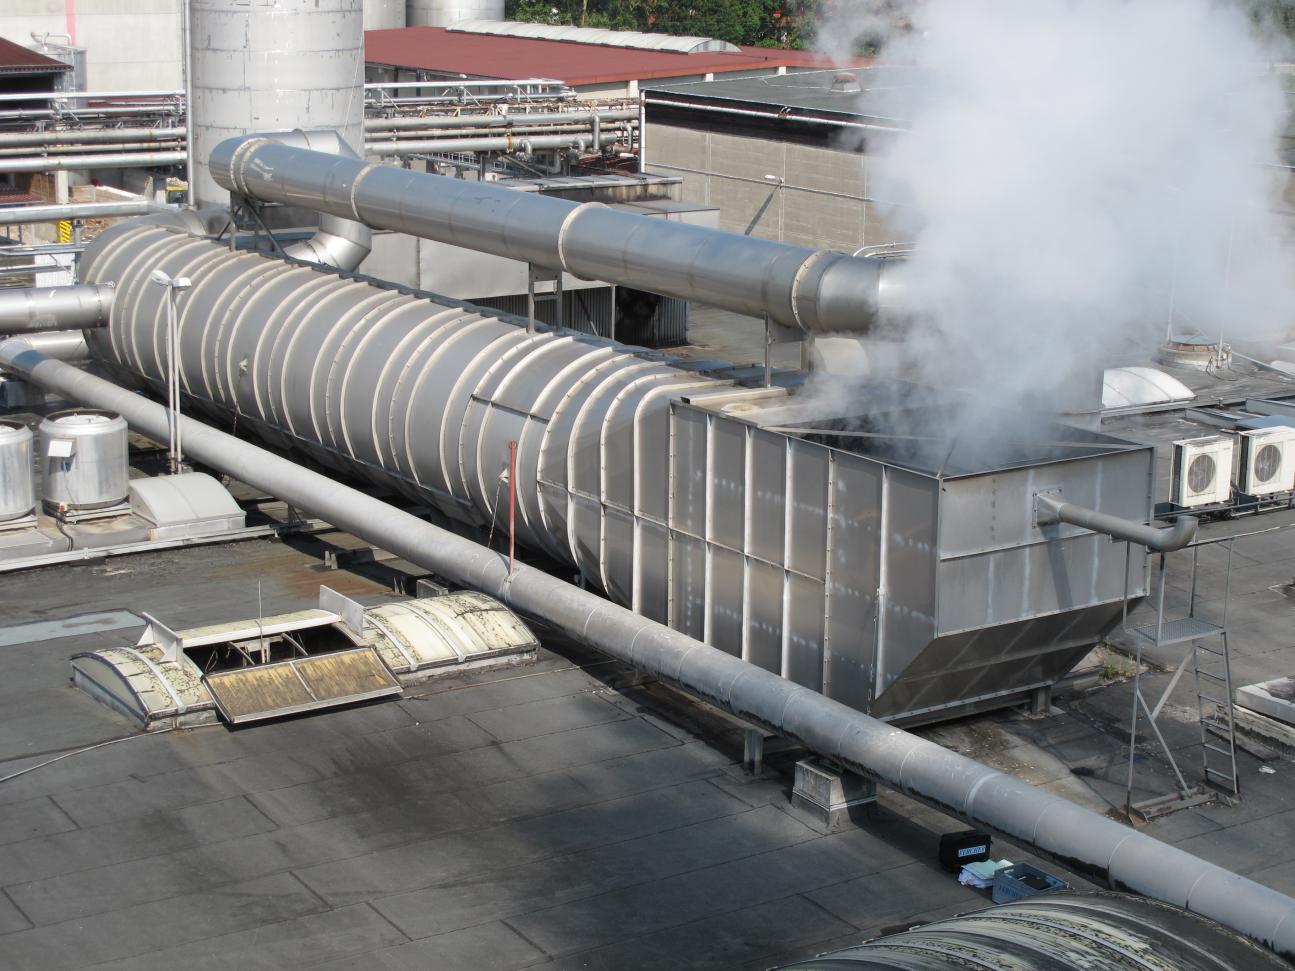 Spraytunnel Type EST in a paper factory in Austria